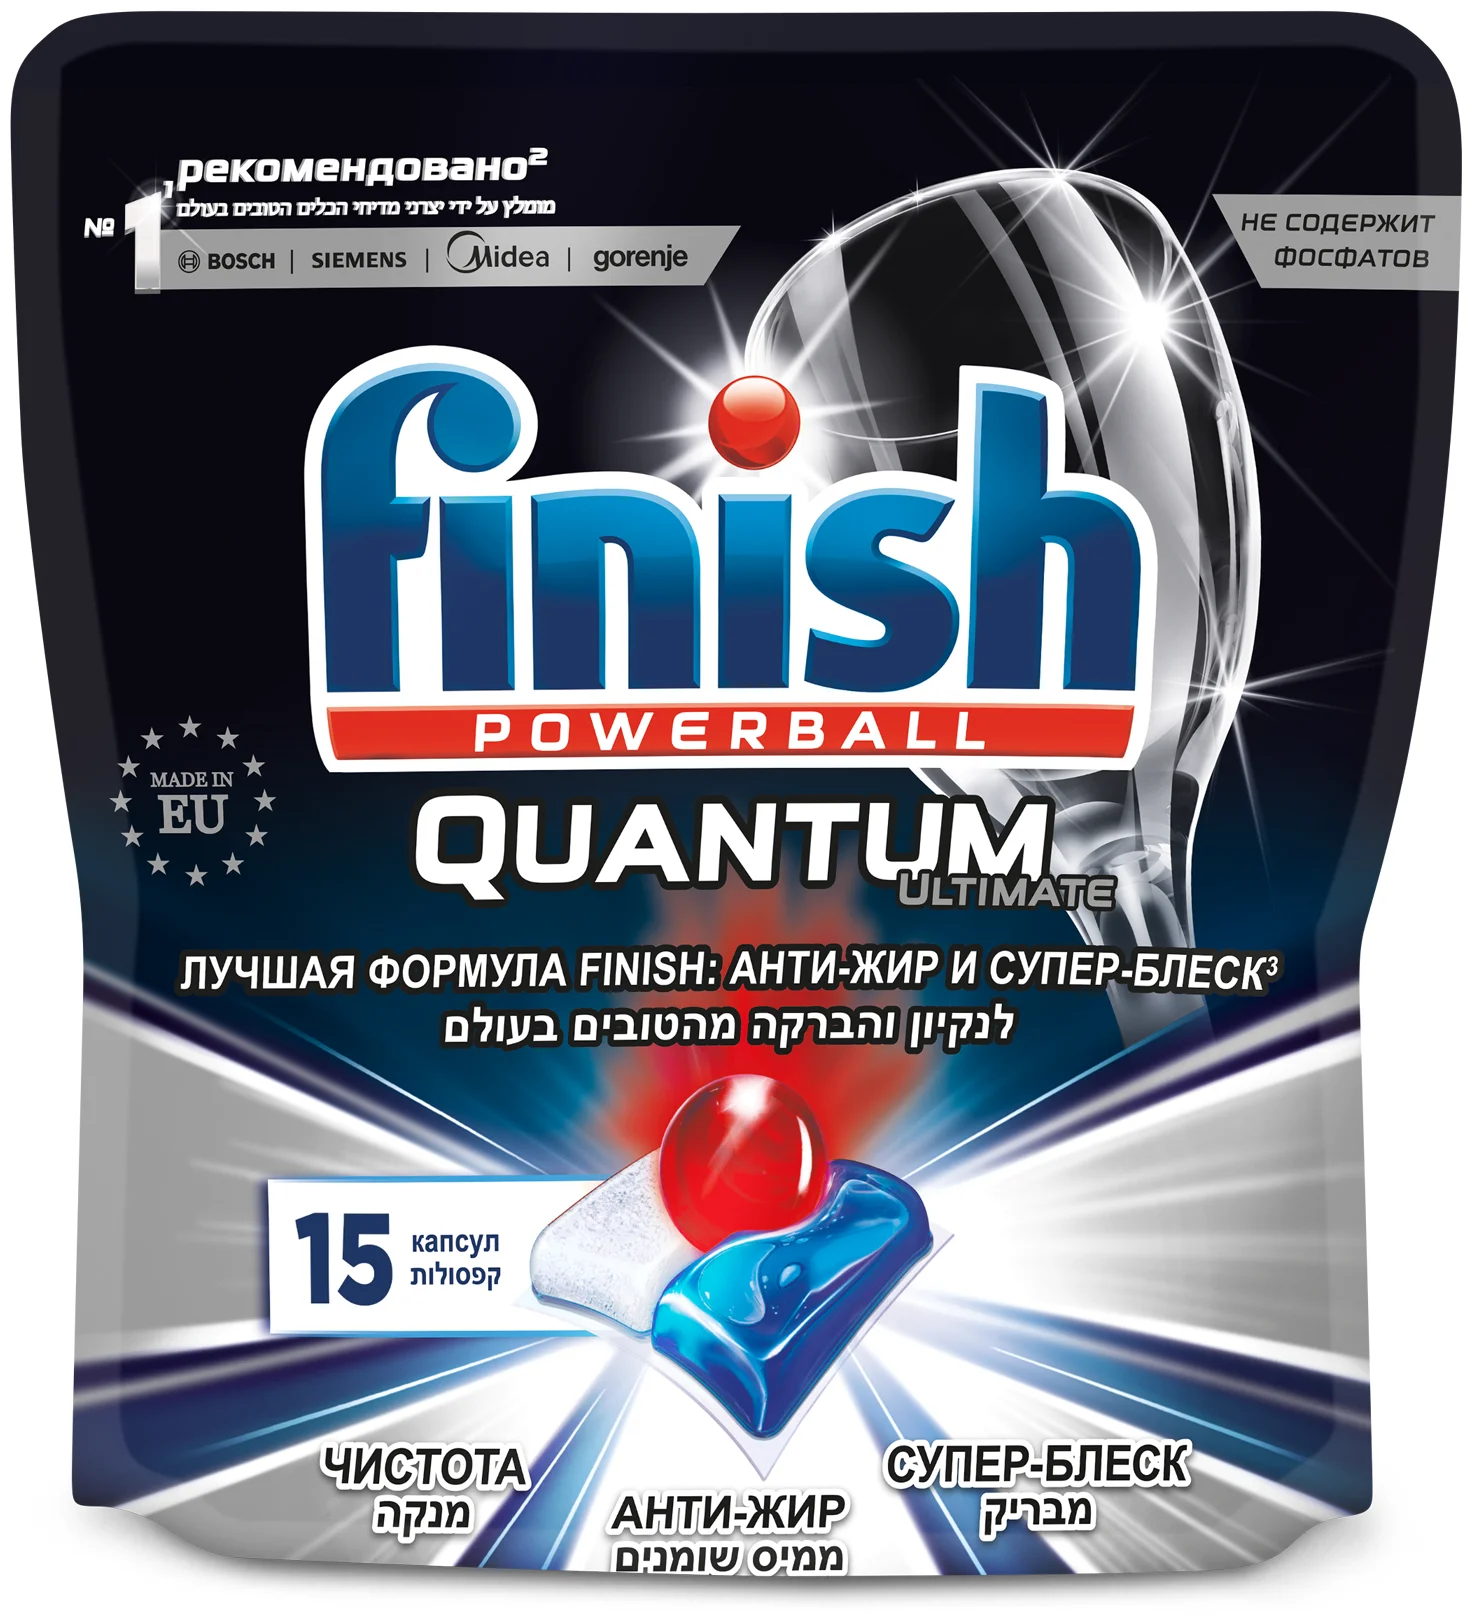 Finish Quantum Ultimate (original) дойпак - назначение: для мытья посуды, для придания блеска, для мытья в холодной воде